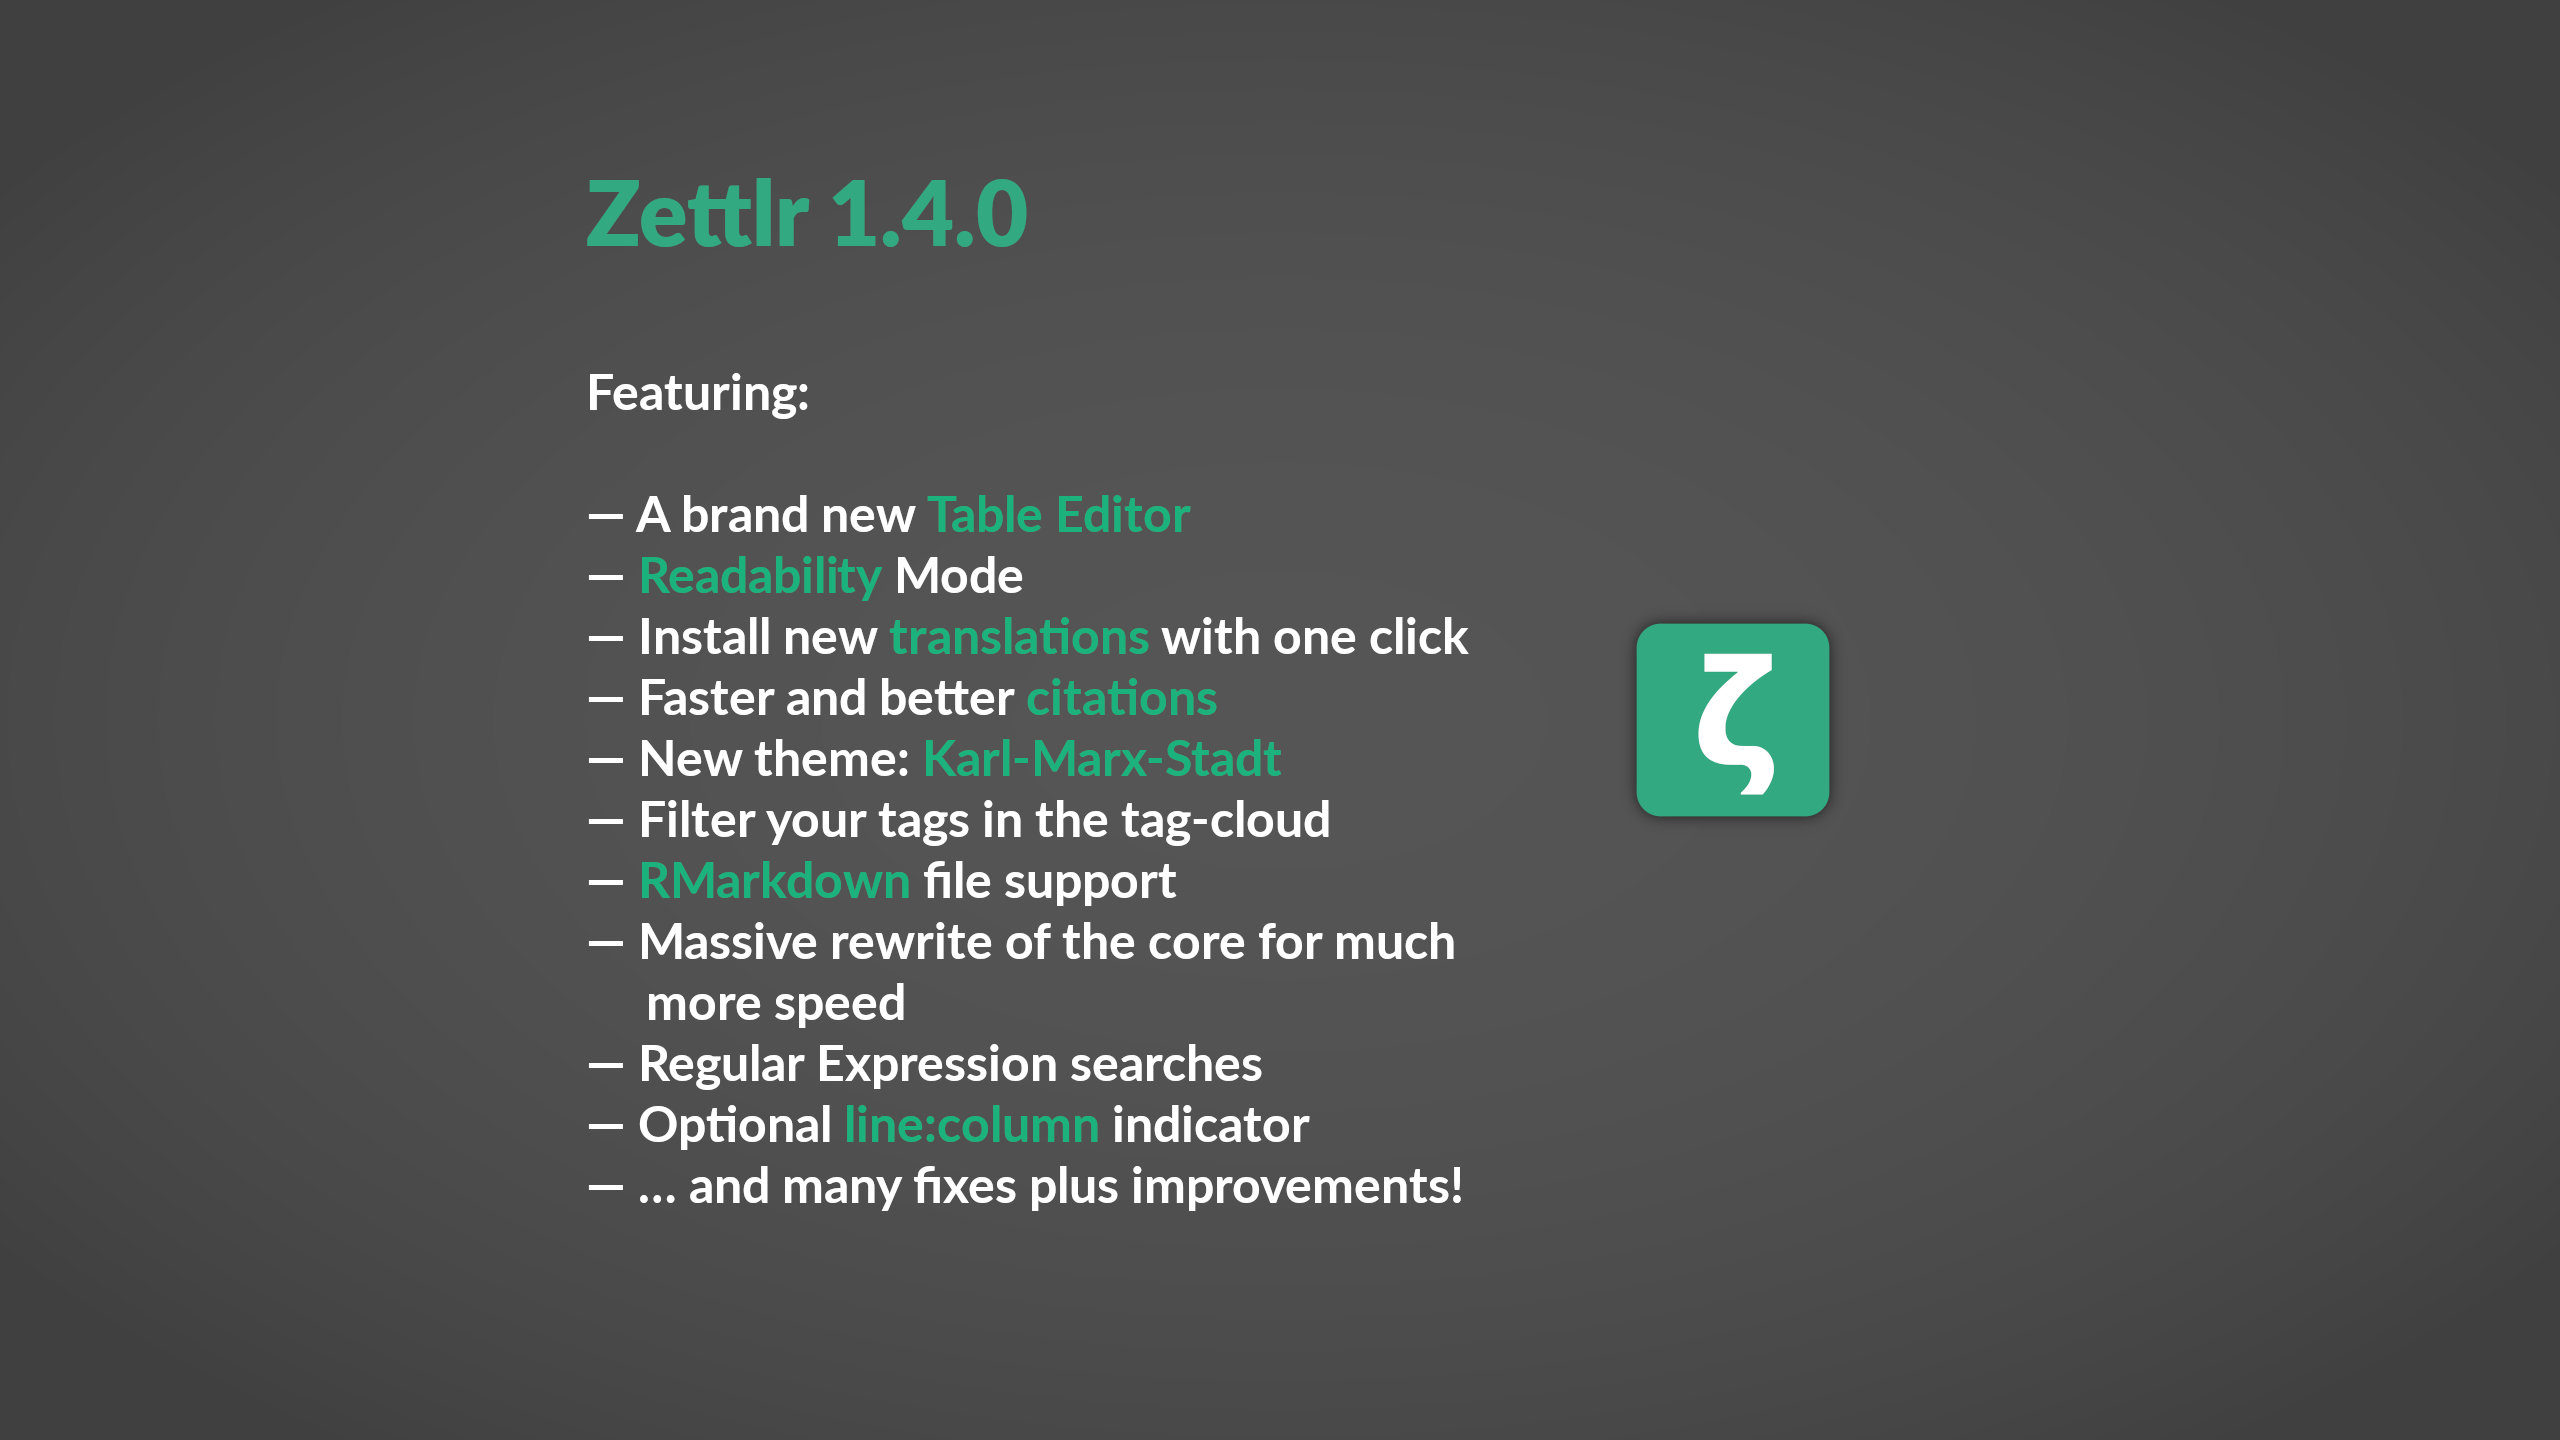 Zettlr 1.4.0 released